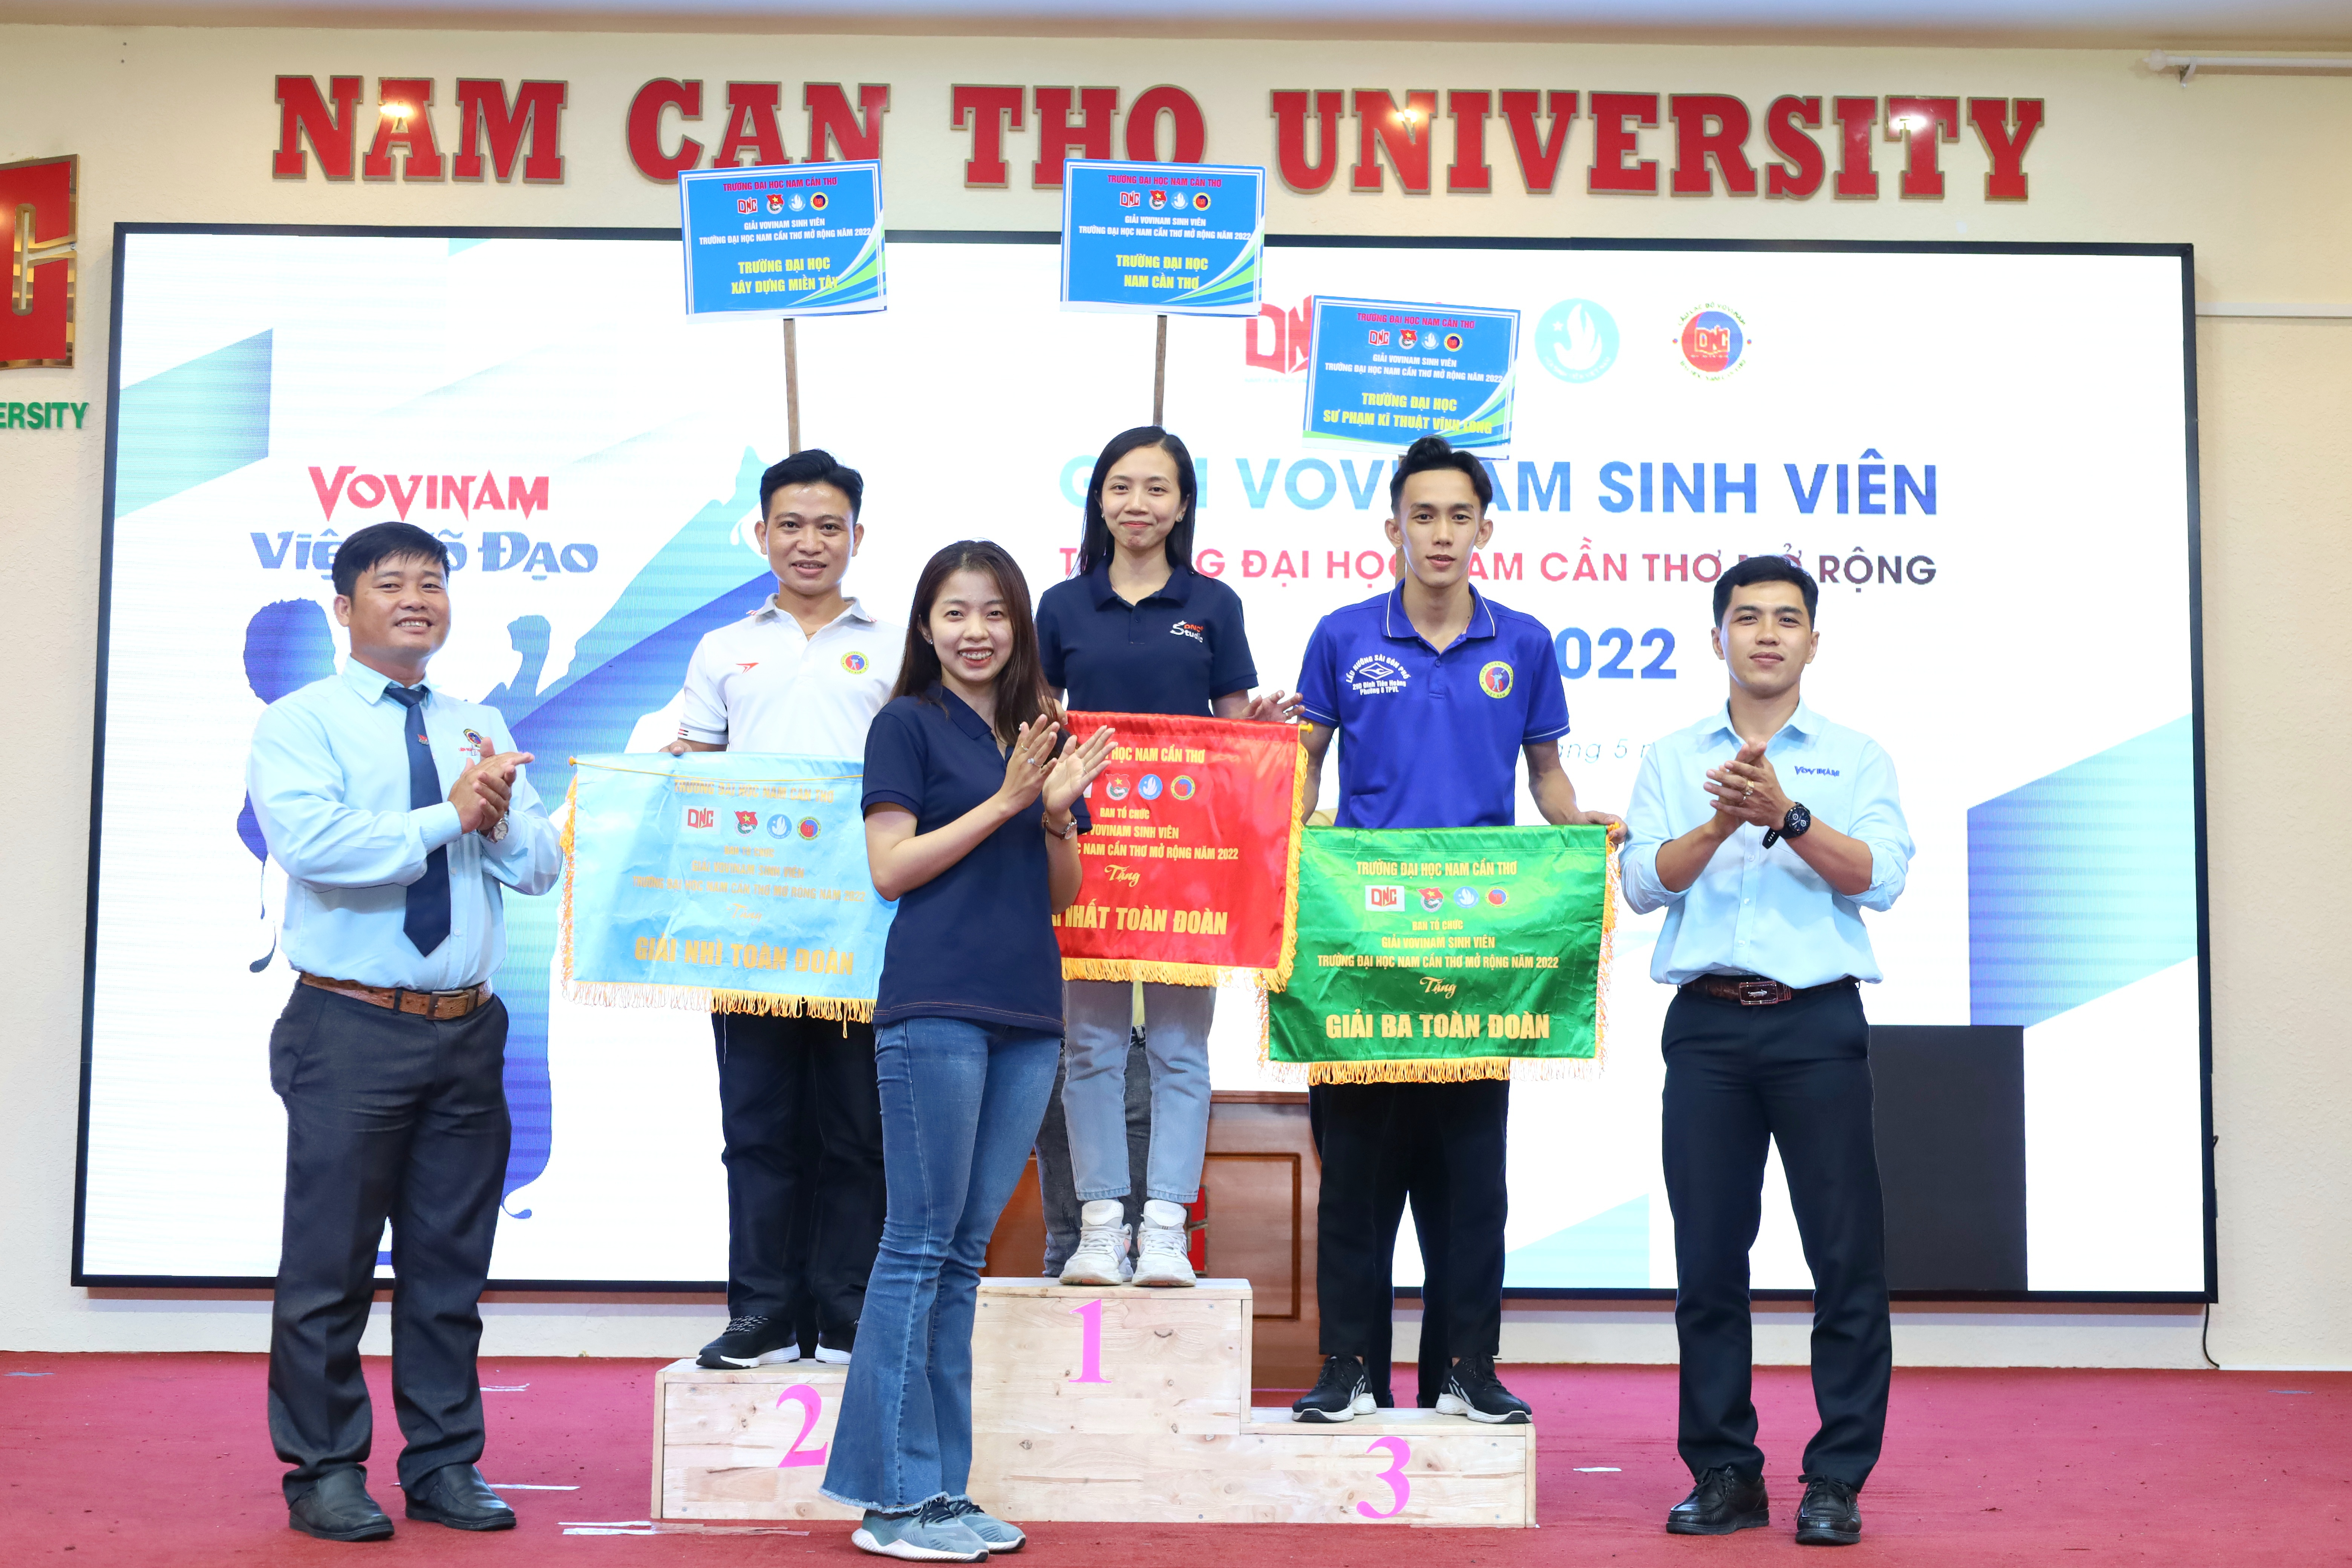 Giải thưởng xuất sắc toàn đoàn hạng nhất thuộc về Trường Đại học Nam Cần Thơ, hạng nhì Trường Đại học Xây dựng Miền Tây (tỉnh Vĩnh Long) và hạng ba Trường Đại học Sư phạm Vĩnh Long.